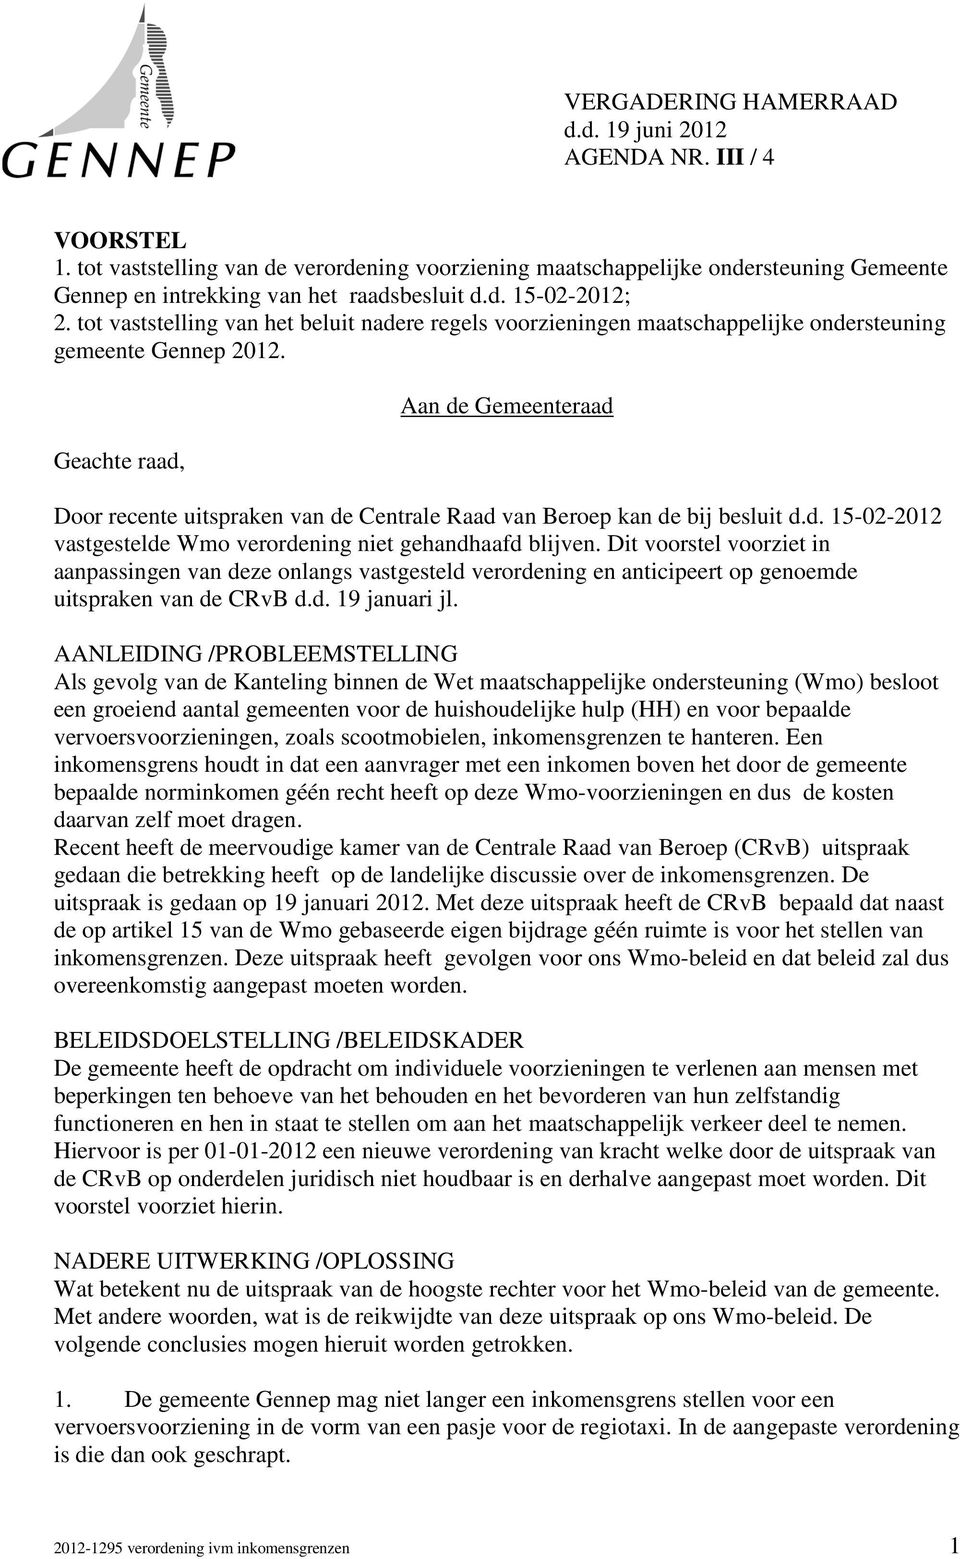 tot vaststelling van het beluit nadere regels voorzieningen maatschappelijke ondersteuning gemeente Gennep 2012.